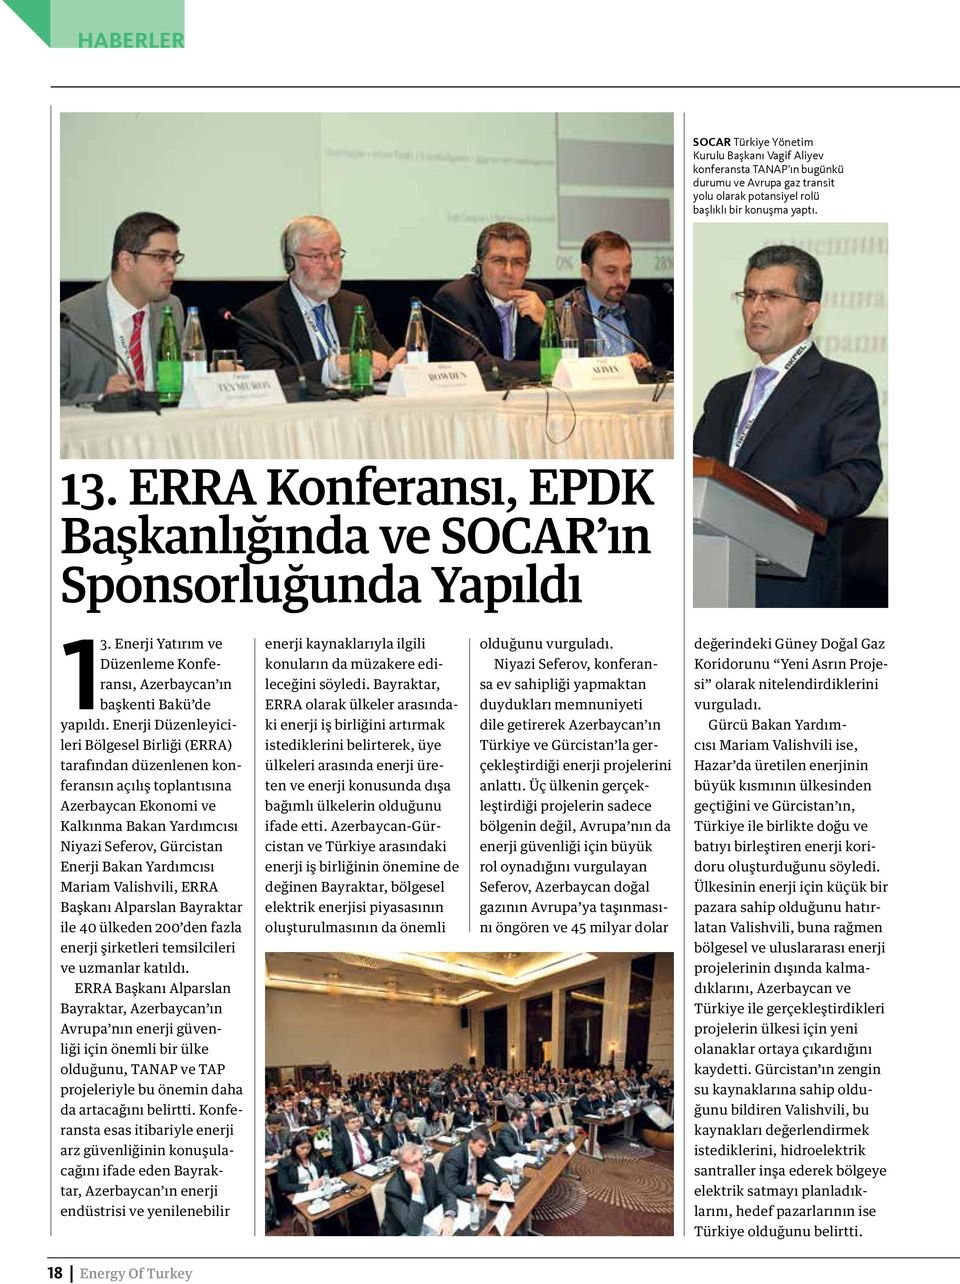 Enerji Düzenleyicileri Bölgesel Birliği (ERRA) tarafından düzenlenen konferansın açılış toplantısına Azerbaycan Ekonomi ve Kalkınma Bakan Yardımcısı Niyazi Seferov, Gürcistan Enerji Bakan Yardımcısı